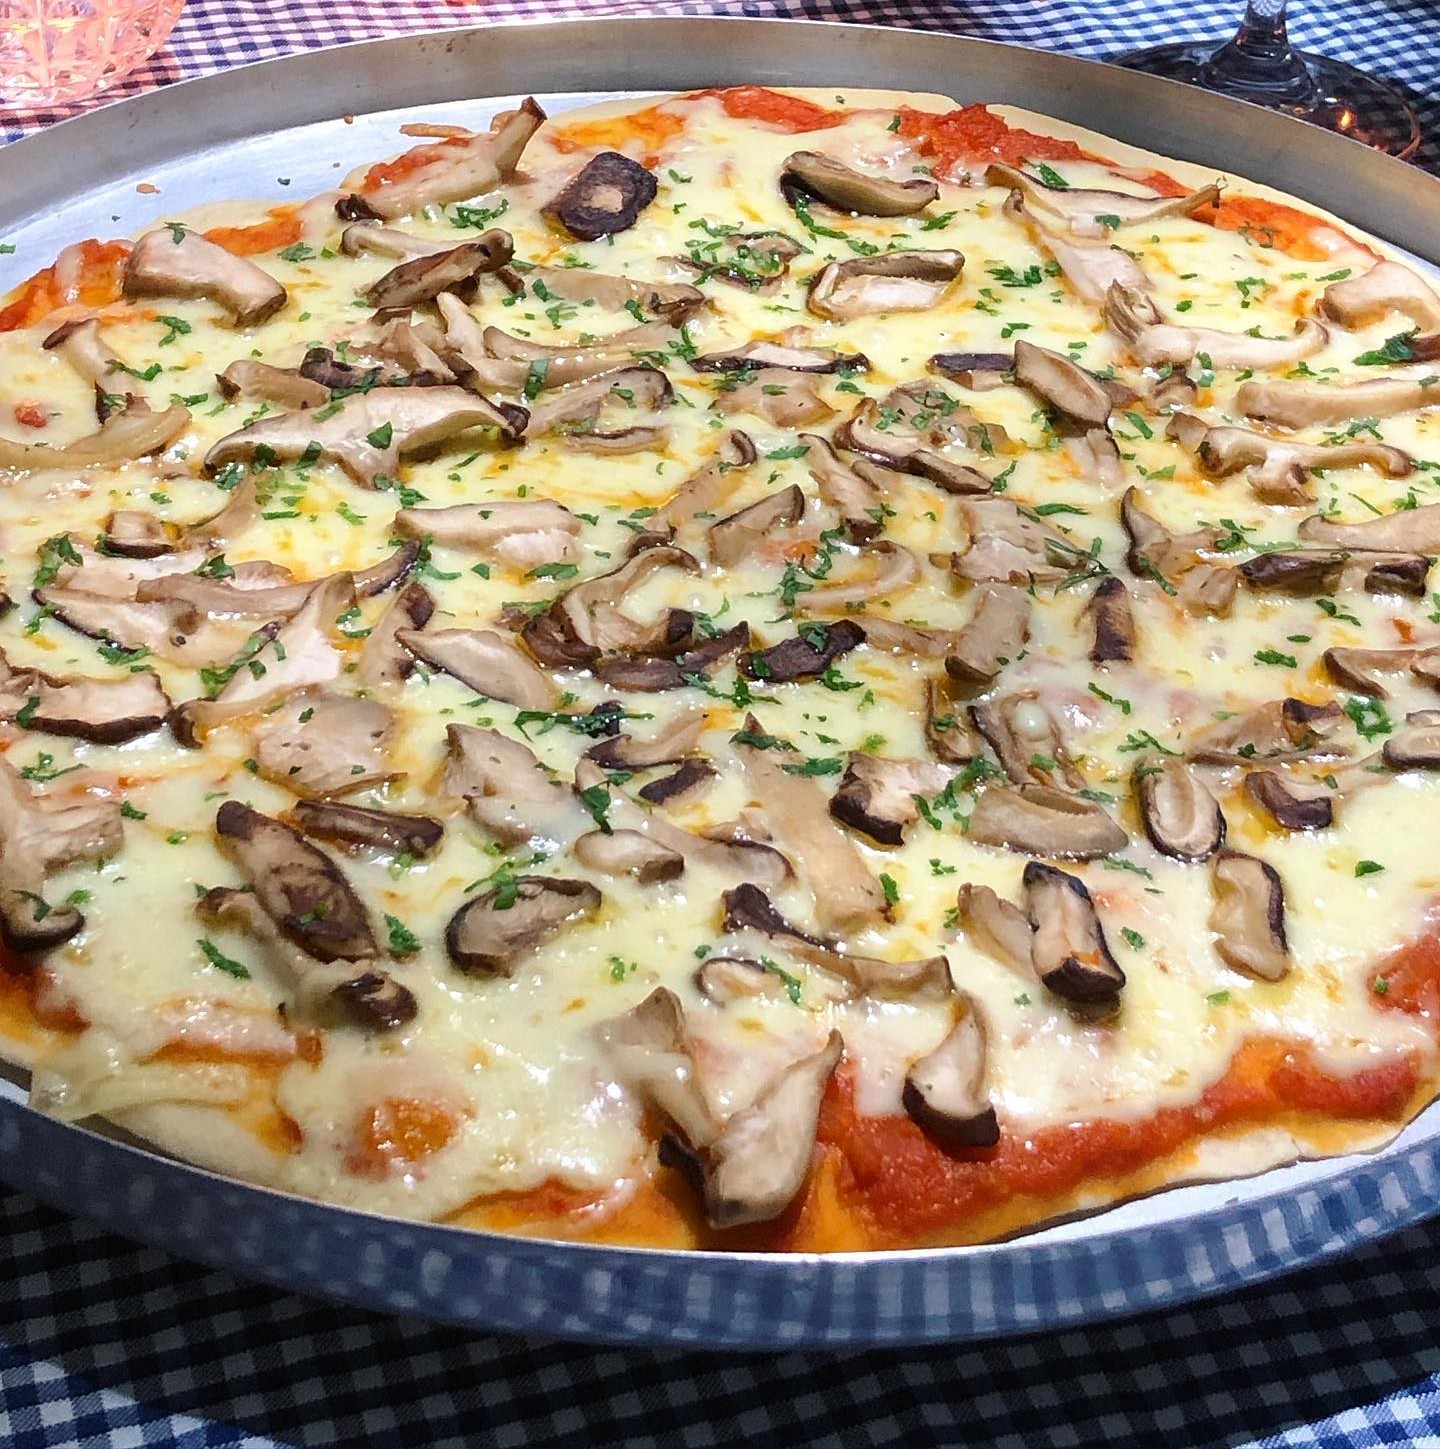 Pizza de Shitake e Shimeji - Picture of Pizzaretto, Sao Paulo